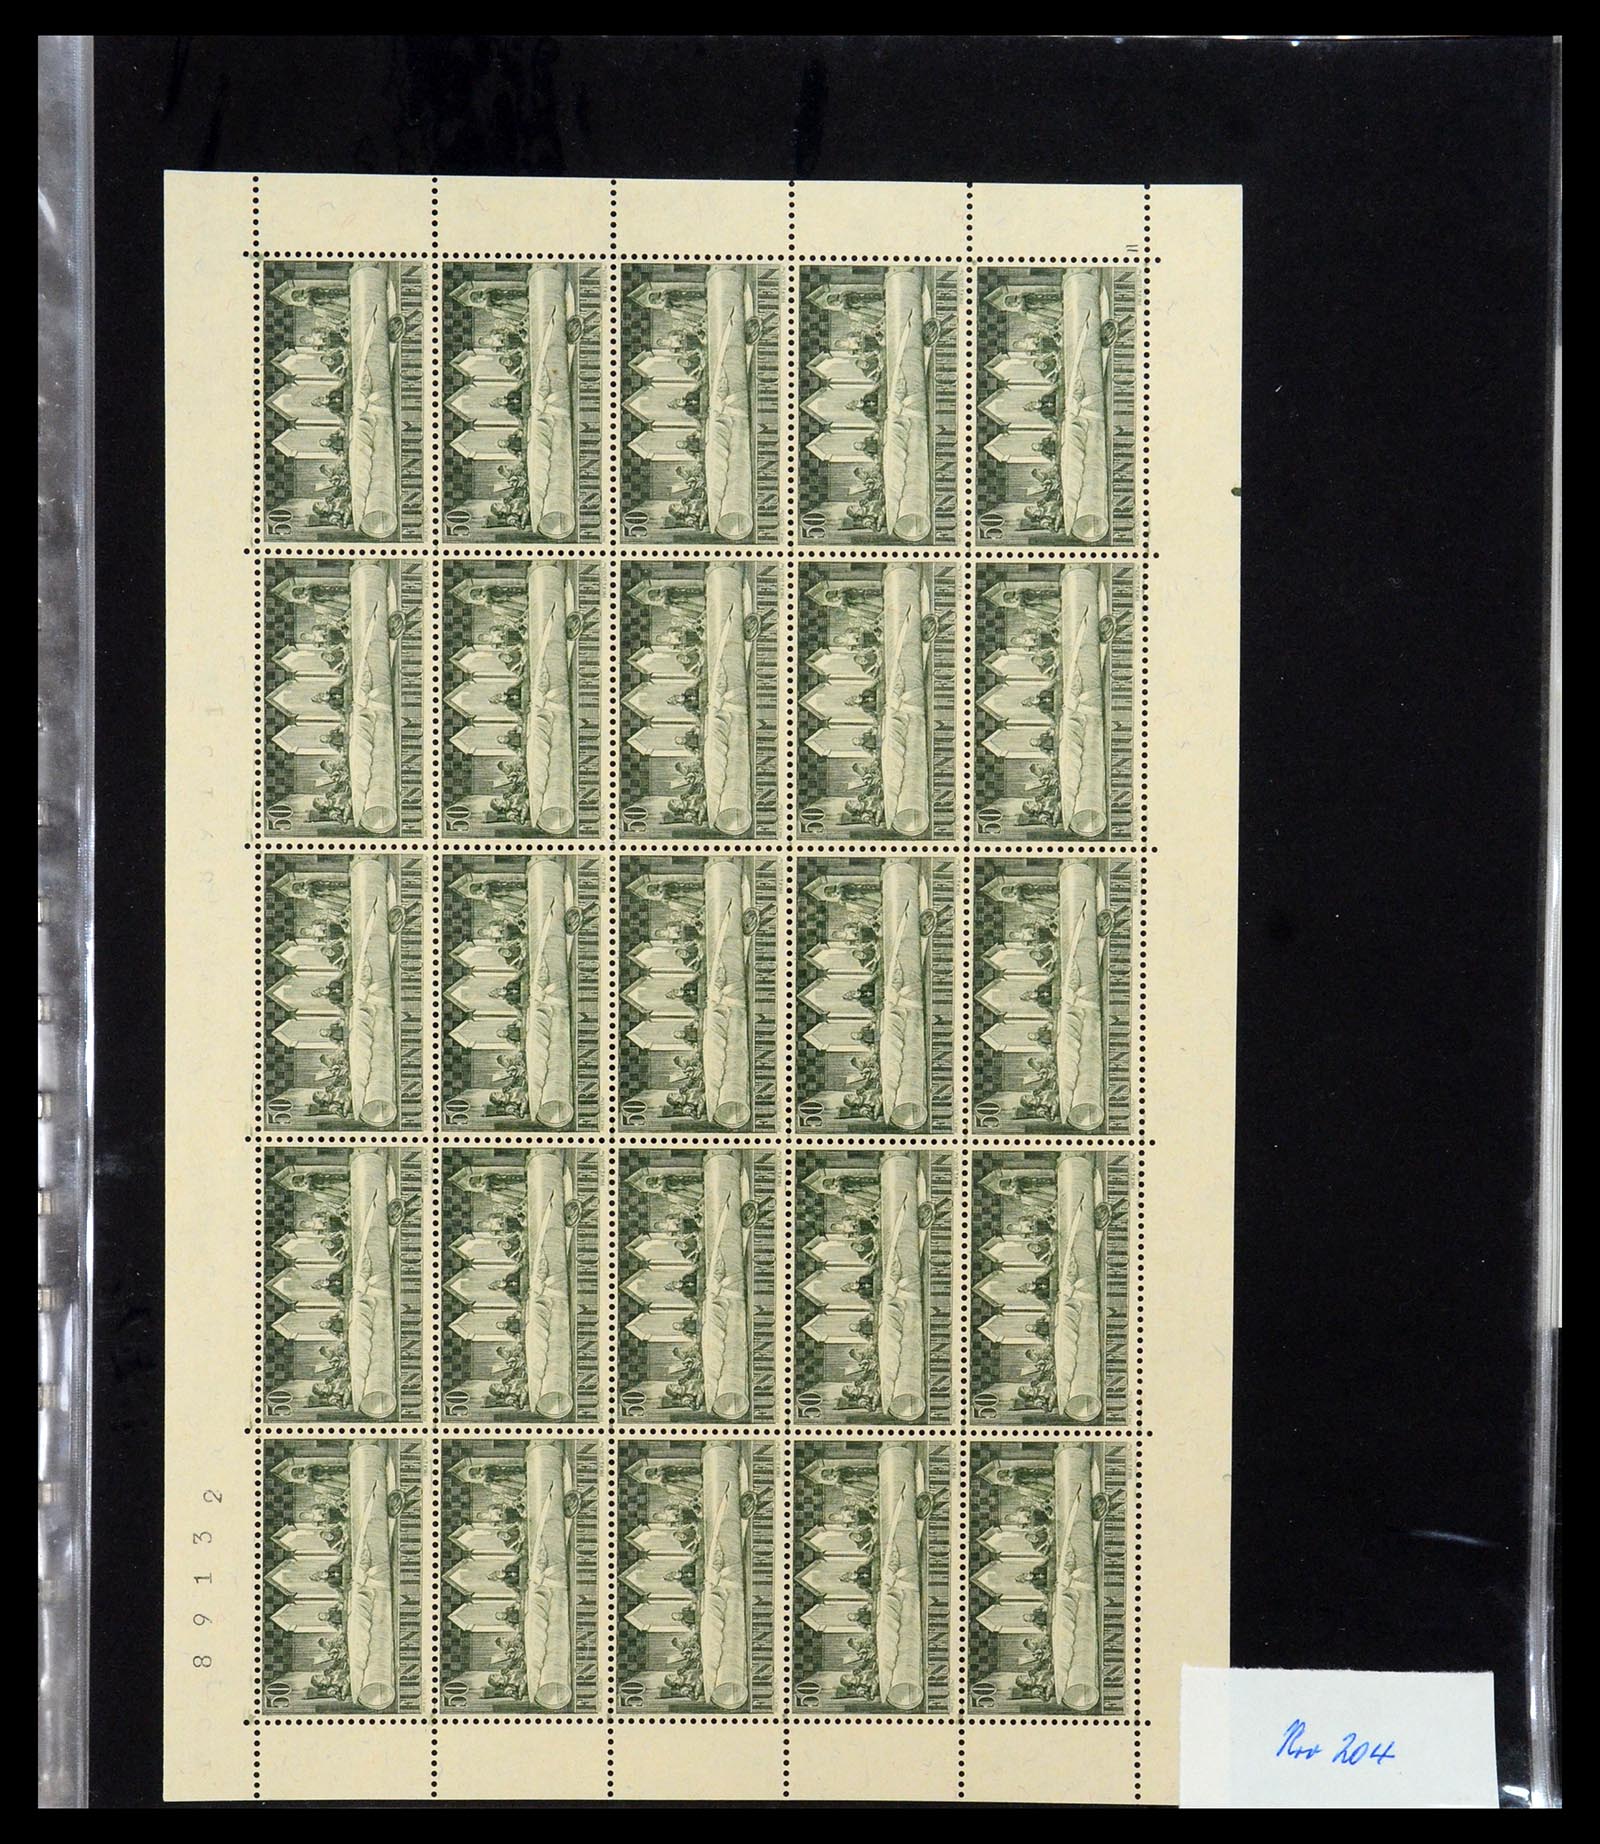 36280 025 - Stamp collection 36280 Liechtenstein souvenir sheets and sheetlets 1934-